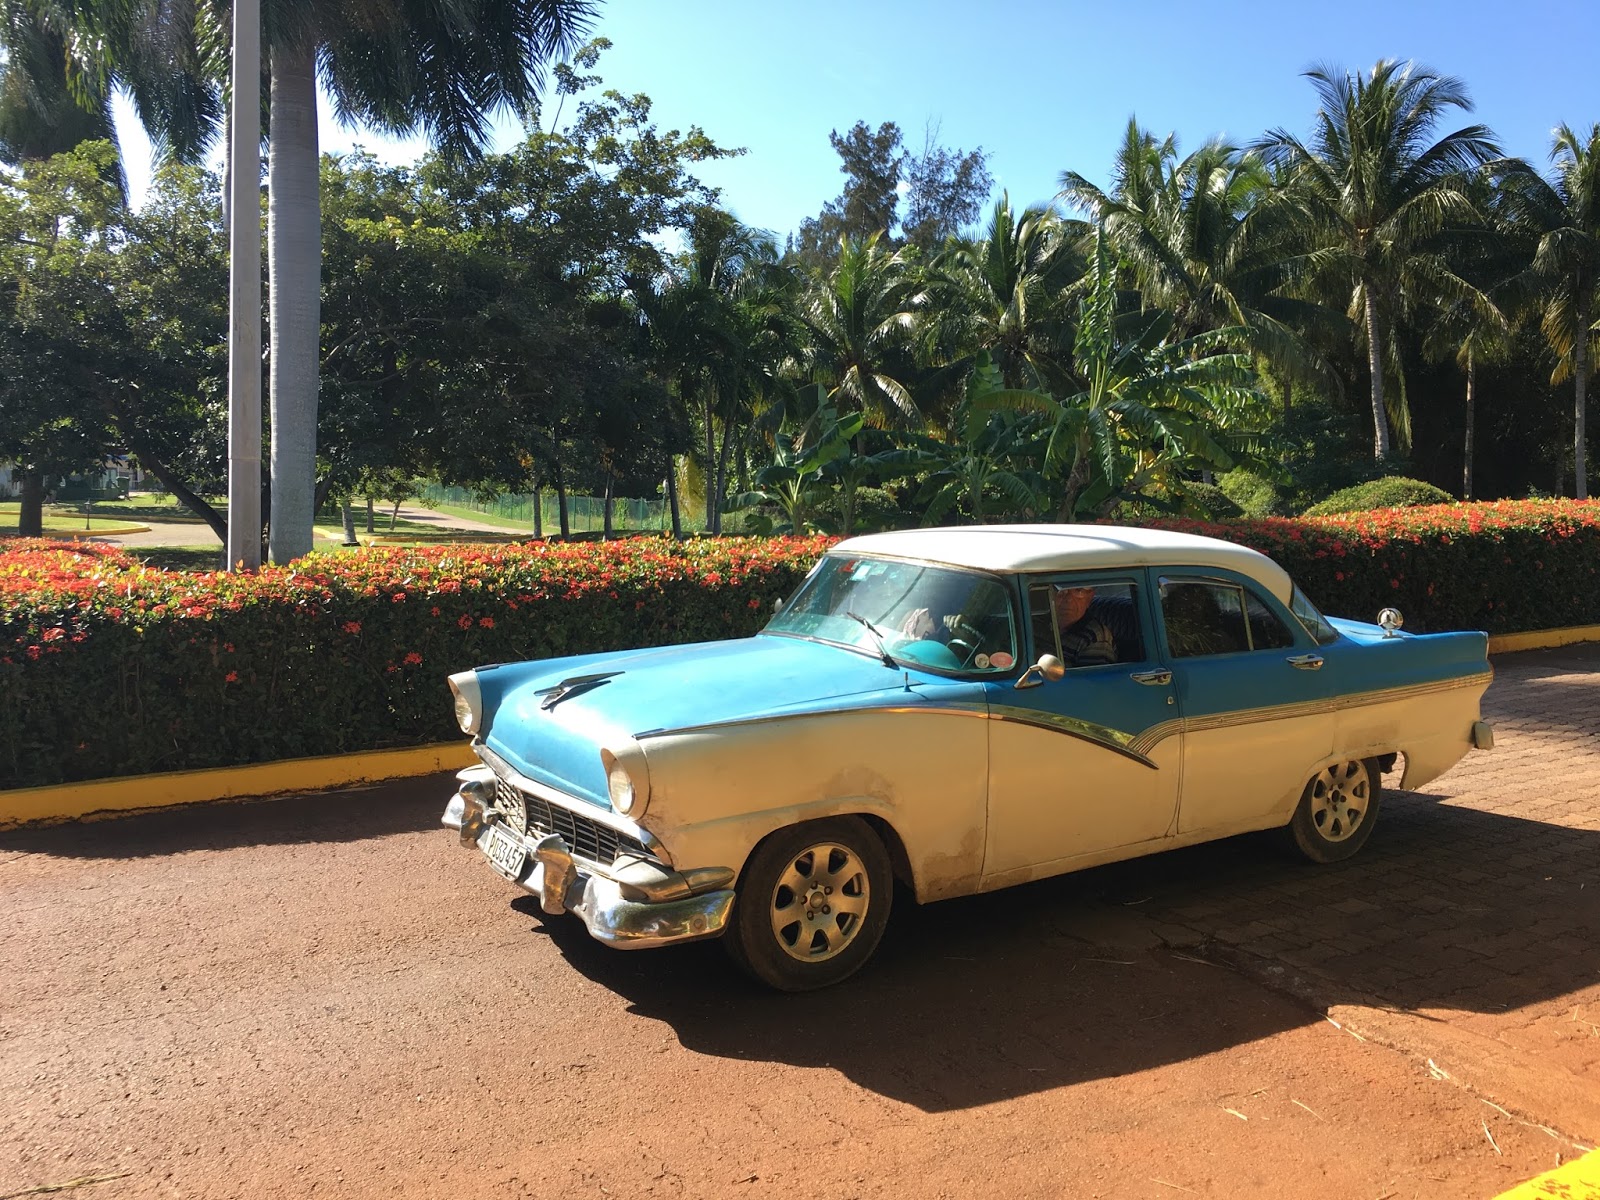 キューバ旅行 車で見るキューバの外交関係 オンボードブログ By オンボードキャリア